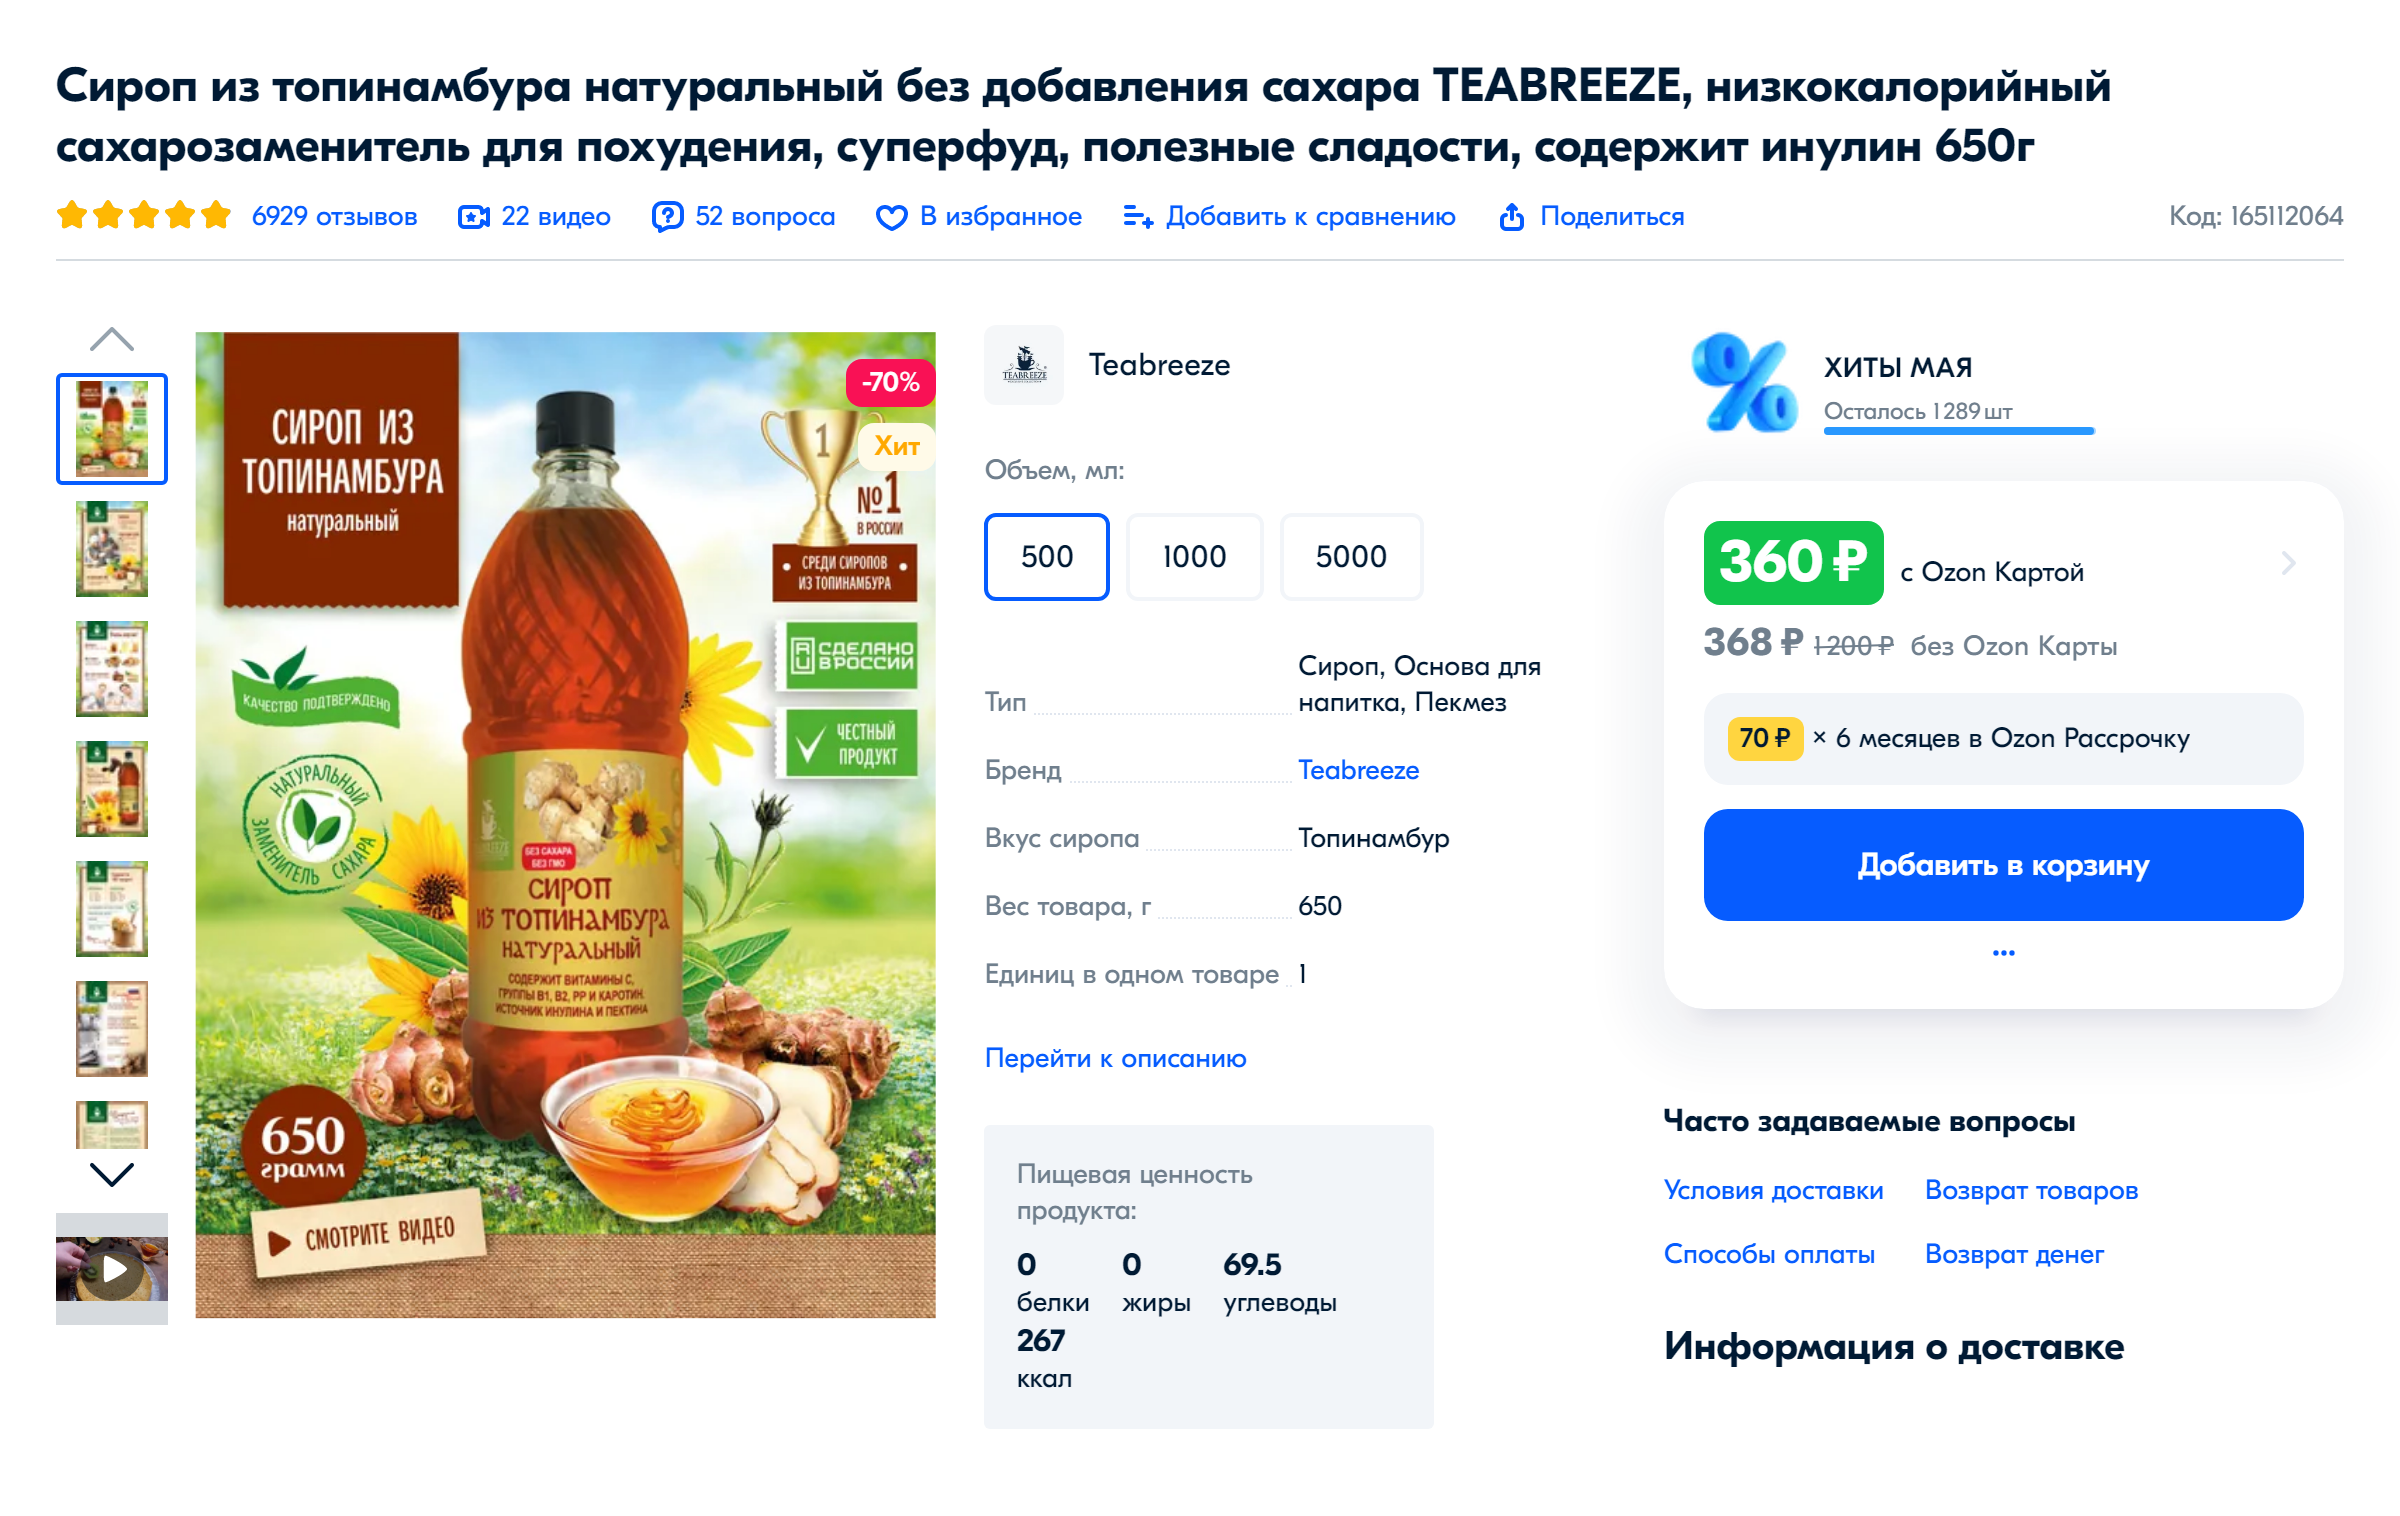 Сироп топинамбура продается как в небольших бутылочках, так и в канистрах на несколько литров — для домашнего и промышленного использования. Источник: ozon.ru